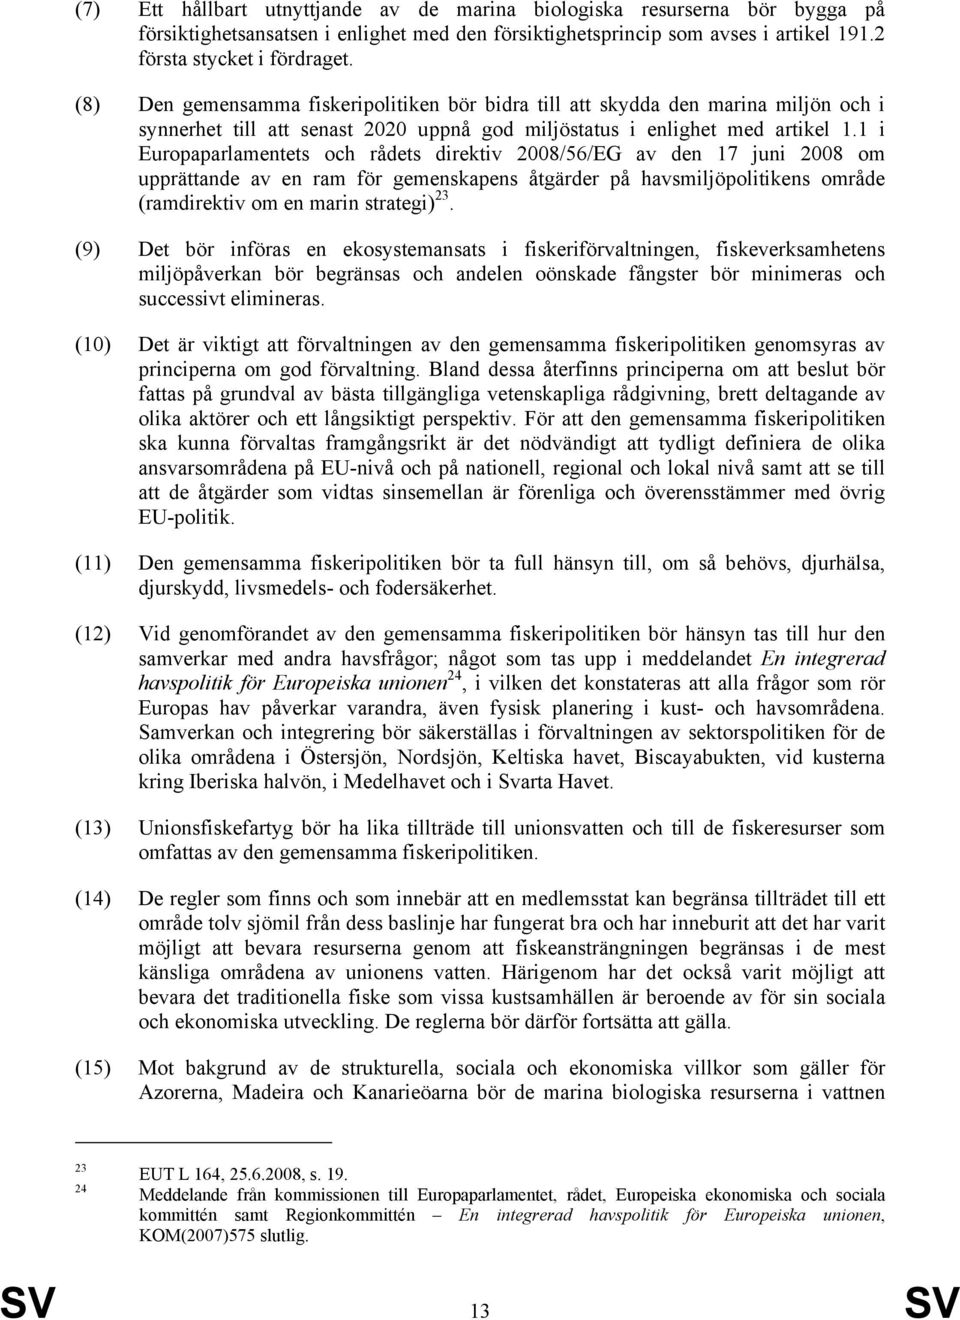 1 i Europaparlamentets och rådets direktiv 2008/56/EG av den 17 juni 2008 om upprättande av en ram för gemenskapens åtgärder på havsmiljöpolitikens område (ramdirektiv om en marin strategi) 23.